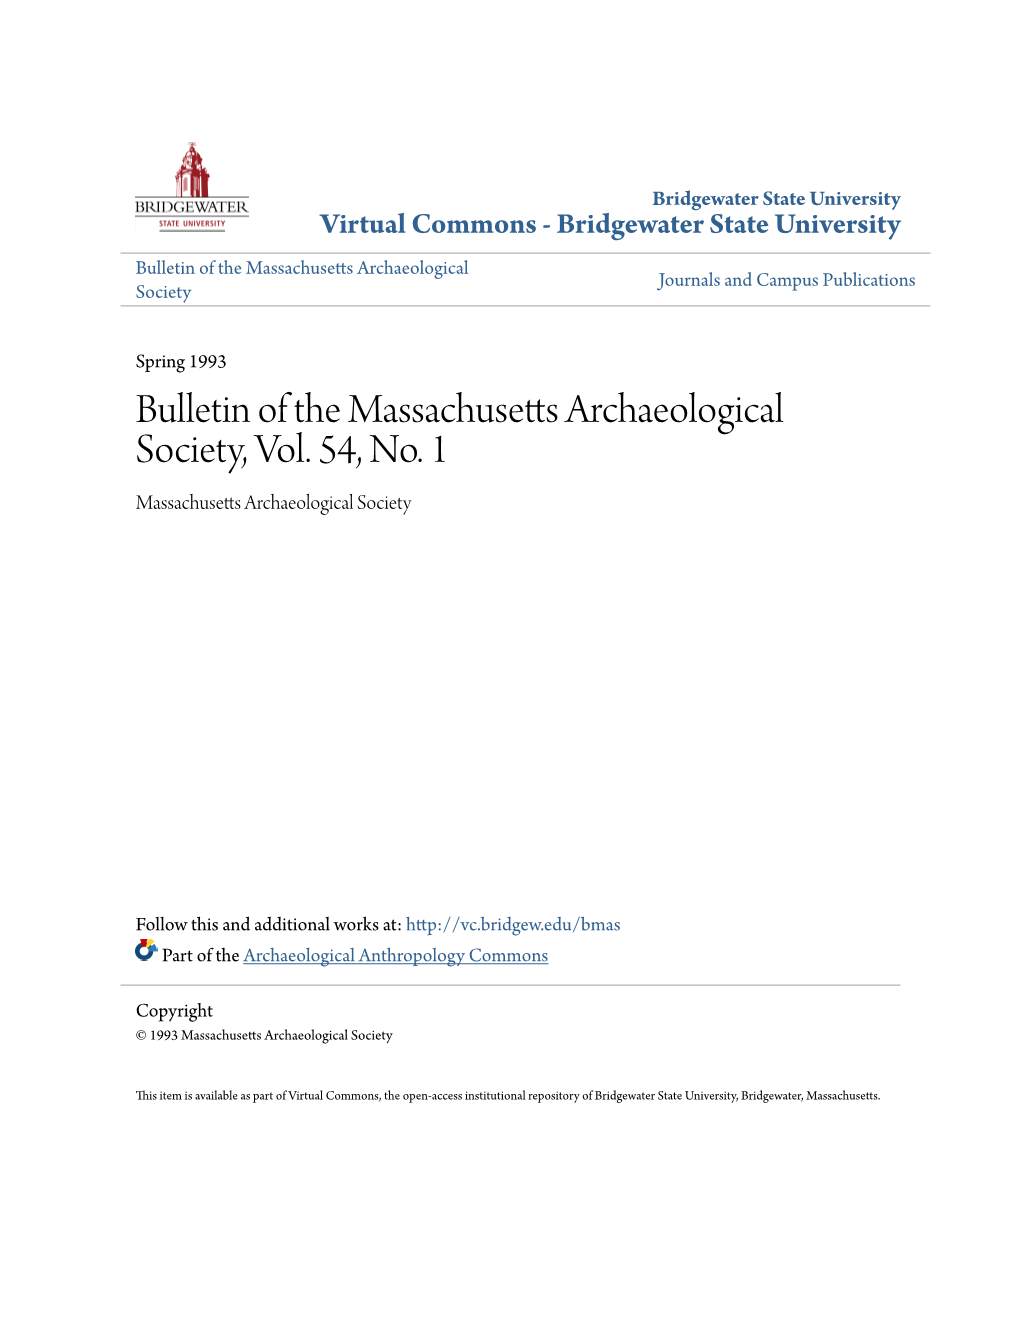 Bulletin of the Massachusetts Archaeological Society, Vol. 54, No. 1 Massachusetts Archaeological Society